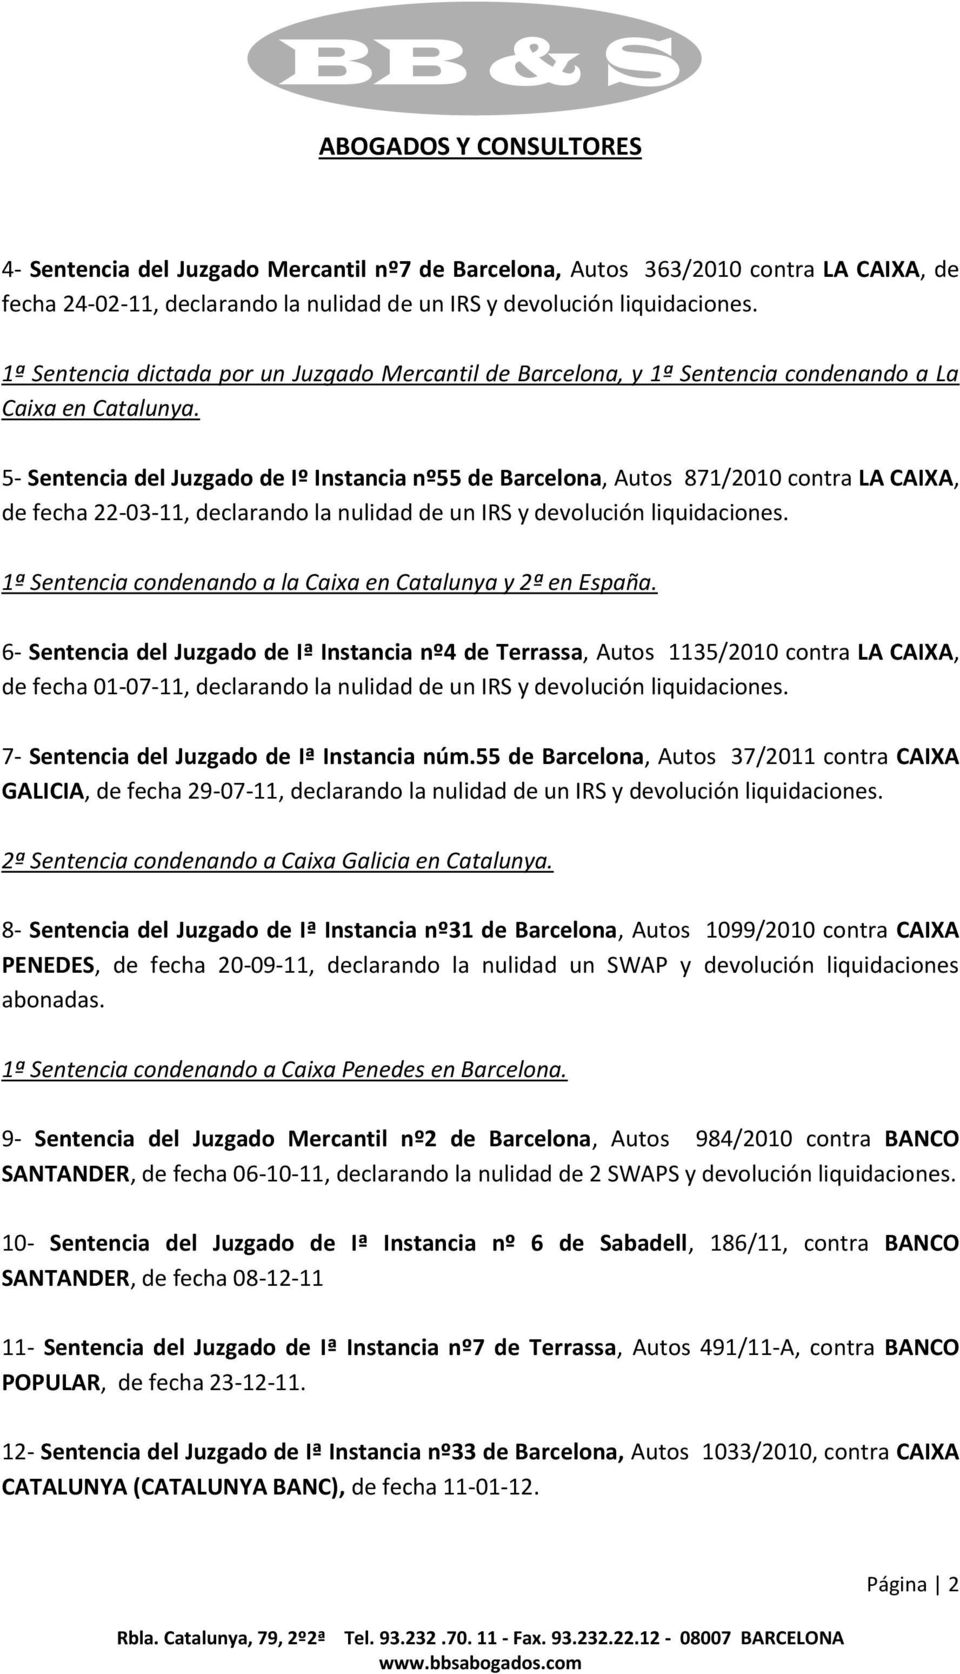 5- Sentencia del Juzgado de Iº Instancia nº55 de Barcelona, Autos 871/2010 contra LA CAIXA, de fecha 22-03-11, declarando la nulidad de un IRS y devolución liquidaciones.